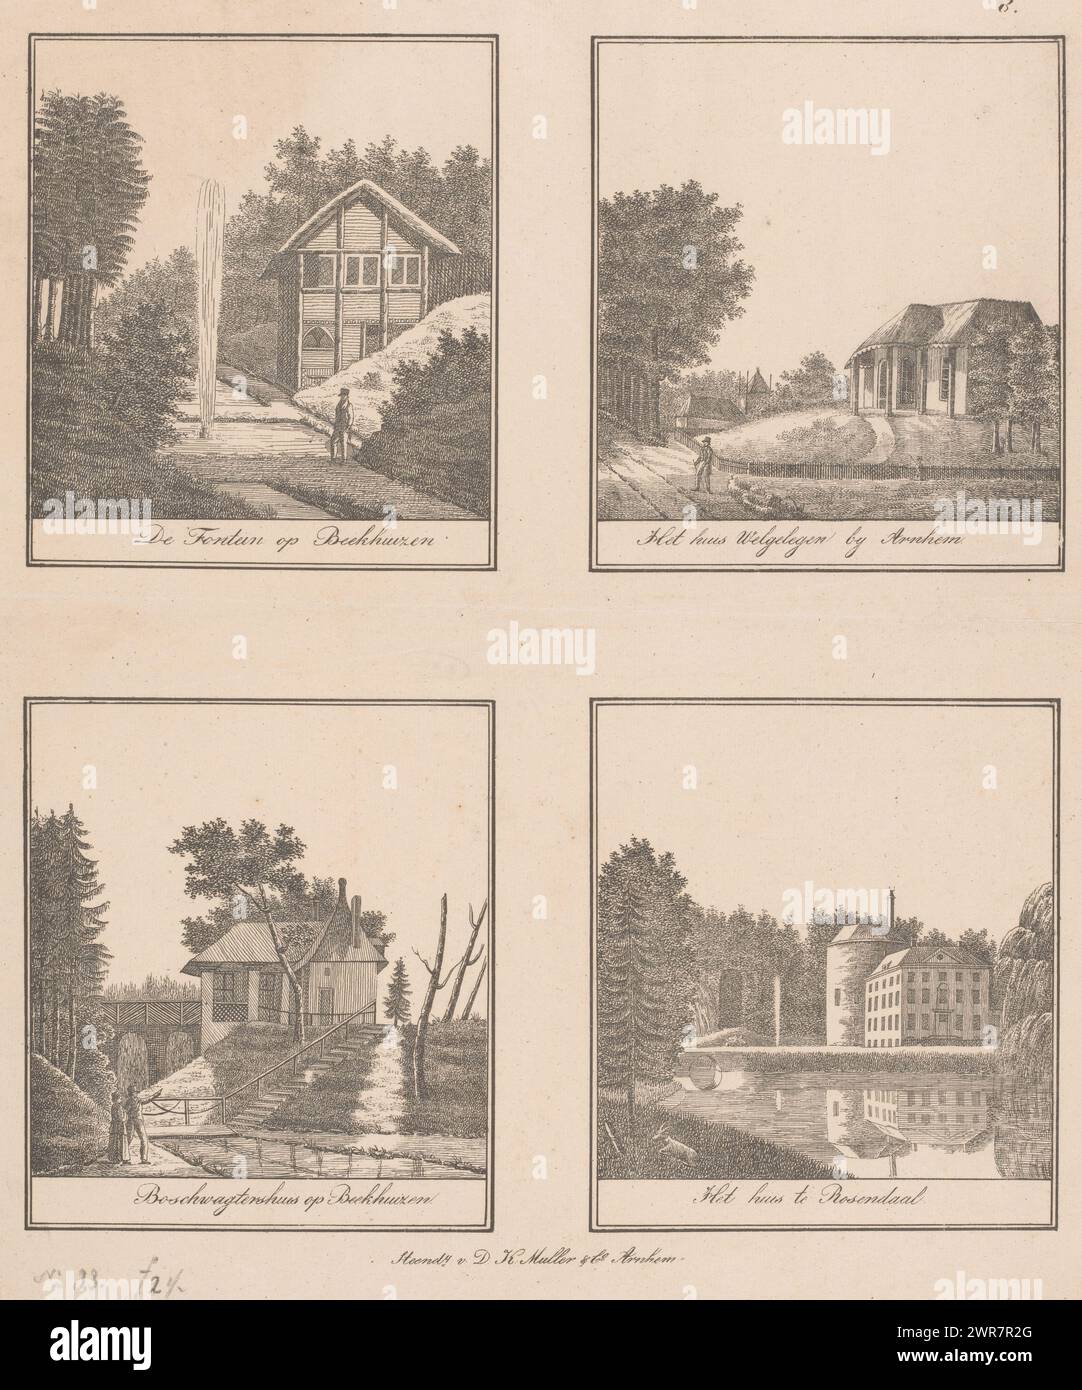 Vista su fontana e case, De Fontein su Beekhuizen / la casa Welgelegen vicino ad Arnhem / Boschwagtershuis su Beekhuizen / la casa a Rosendaal (titolo su oggetto), quattro immagini su un foglio. In alto a sinistra, una vista di un uomo in una fontana della casa Beekhuizen a Velp. In alto a destra una vista della casa Welgelegen ad Arnhem. In basso a sinistra una vista della casa del forestale nella casa di Beekhuizen. In basso a destra una vista della tenuta di Rosendael a Rozendaal., stampatore: Anonimo, stampatore: D.K. Muller & Co., editore: D.K. Muller & Co., Arnhem, 1815 - 1841, carta, altezza 419 mm x larghezza 336 mm Foto Stock